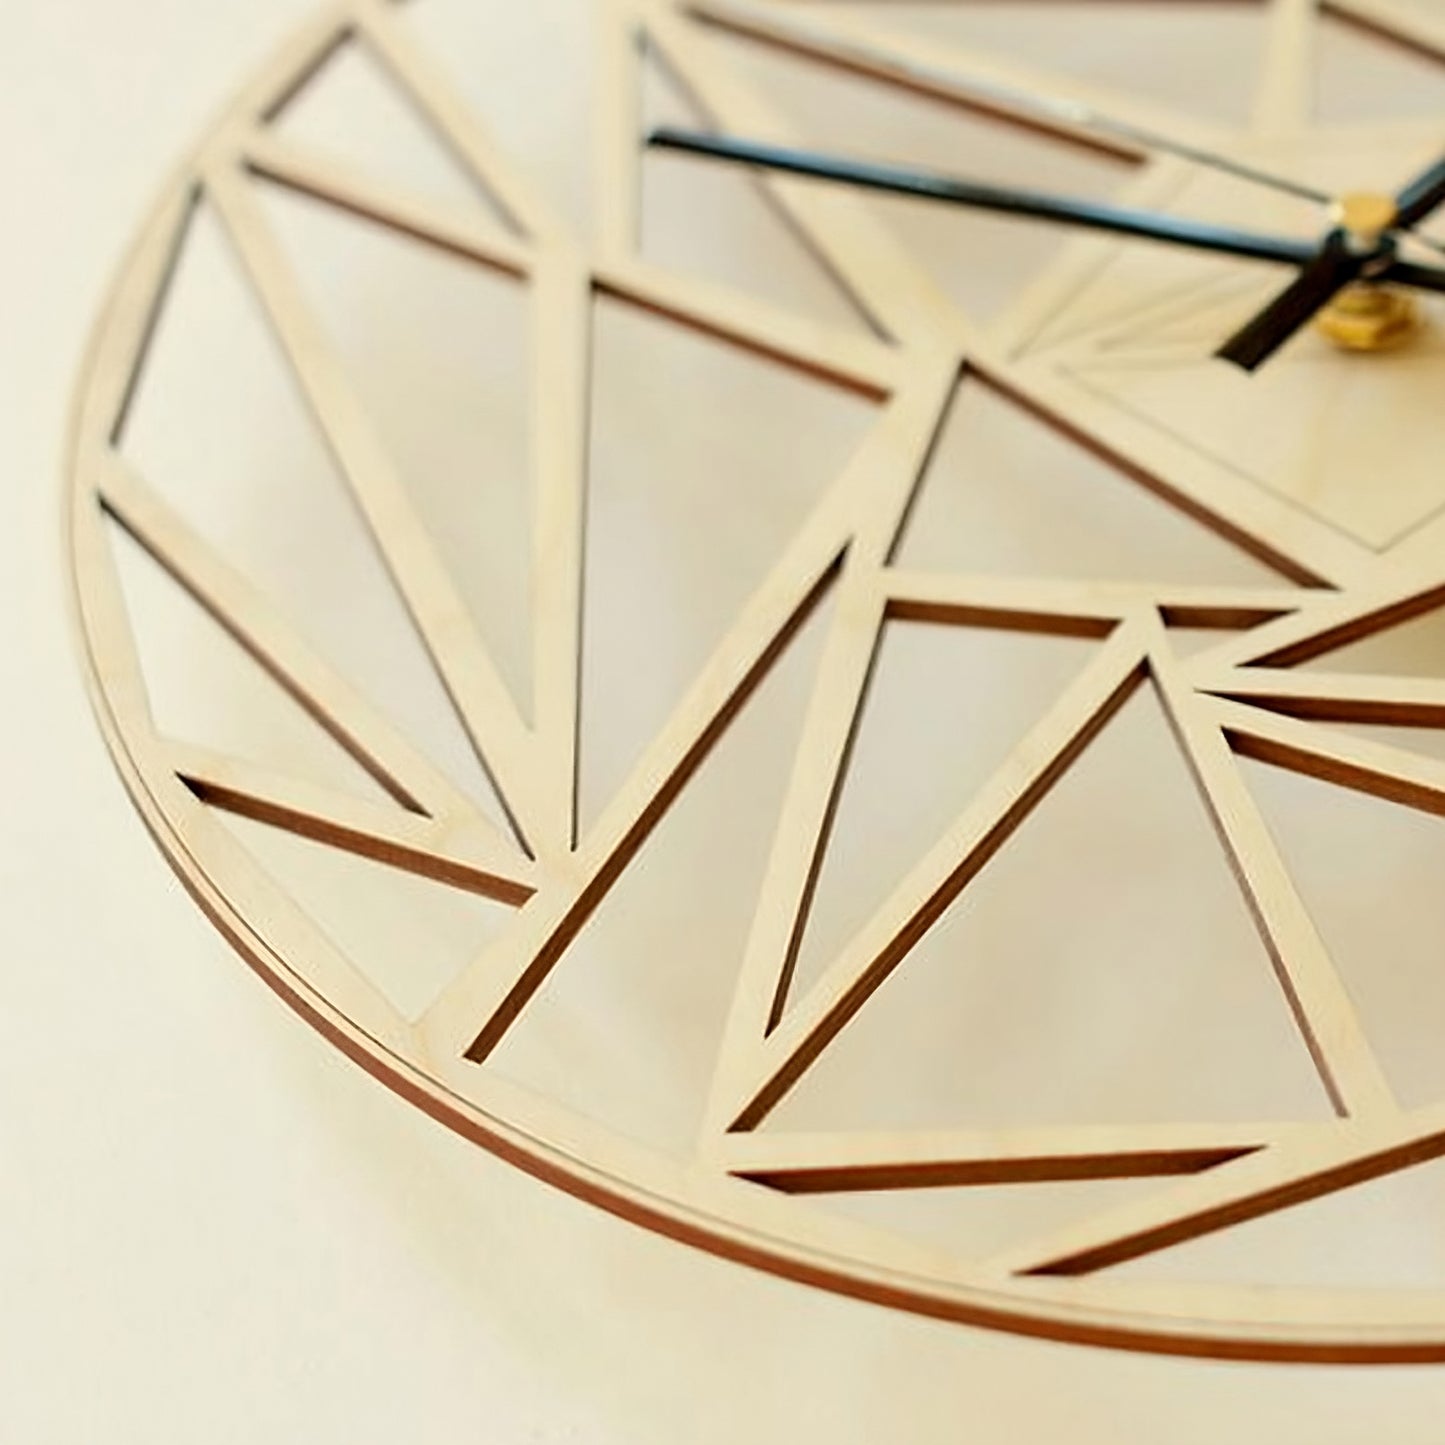 Dettaglio del Quadrante - Orologio da Parete - Stile Creativo - Arte per interni.